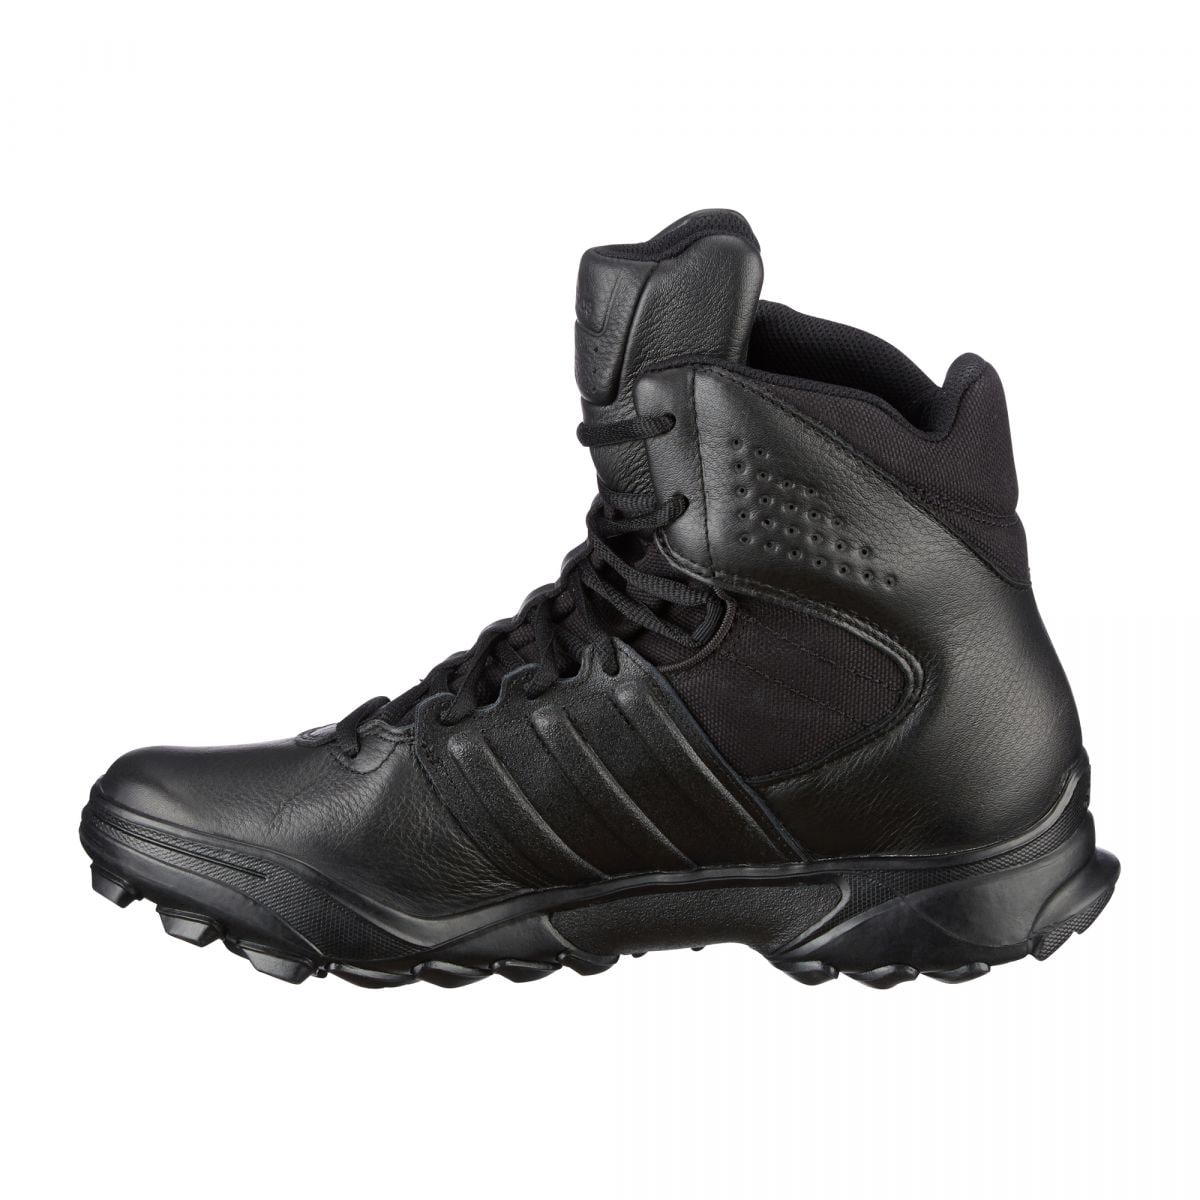 Tactical Boot adidas GSG 9.7 | Tactical Boot adidas GSG 9.7 | Combat ...